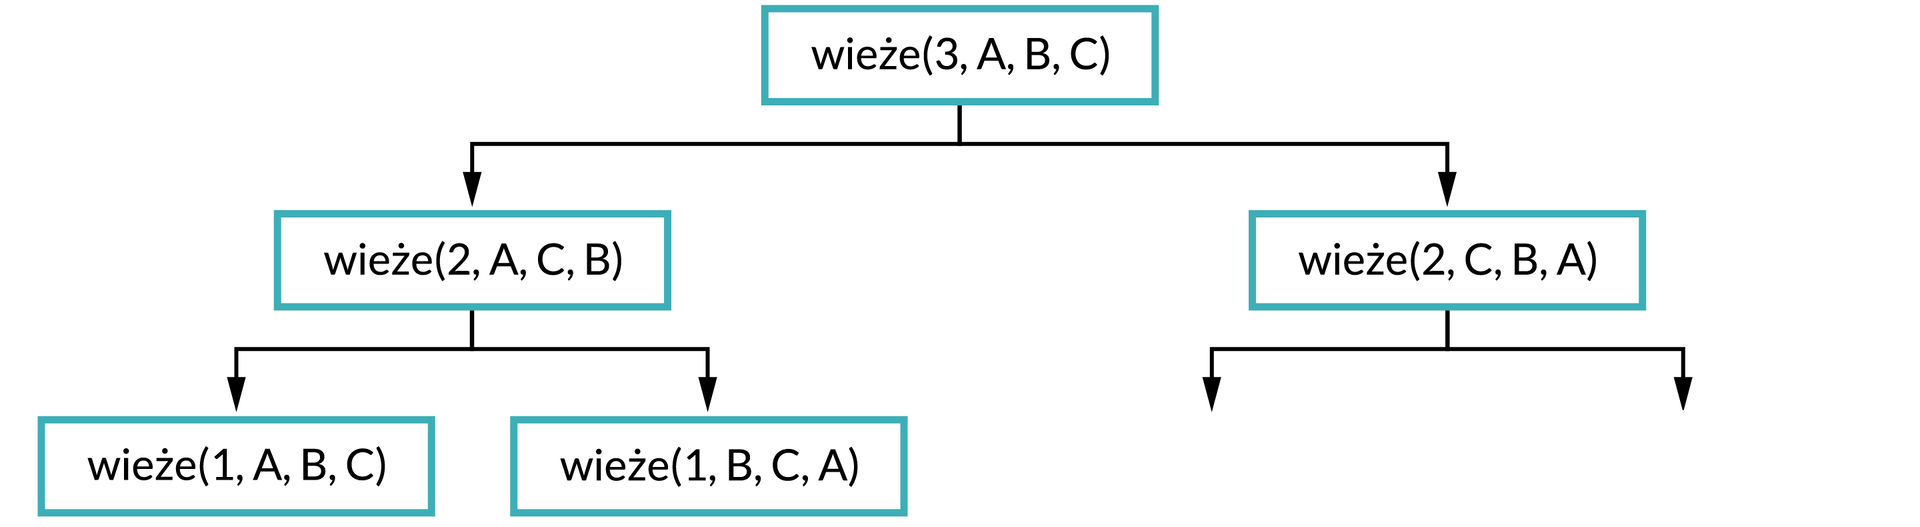 Ilustracja przedstawia schemat. Na górze schematu w prostokątnej ramce jest napis: wieże(3, A, B, C). Od ramki dwie strzałki w dół, pod strzałką po lewej stronie zapis w ramce: wieże(2, A, C, B). Od ramki dwie strzałki w dół, pod strzałką po lewej stronie zapis w ramce: wieże(1, A, B, C), pod strzałką po prawej stronie wieże(1, B, C, A). Pod strzałką po prawej stronie od pierwszego zapisu napis: wieże(2, C, B, A). Od ramki dwie strzałki w dół.     